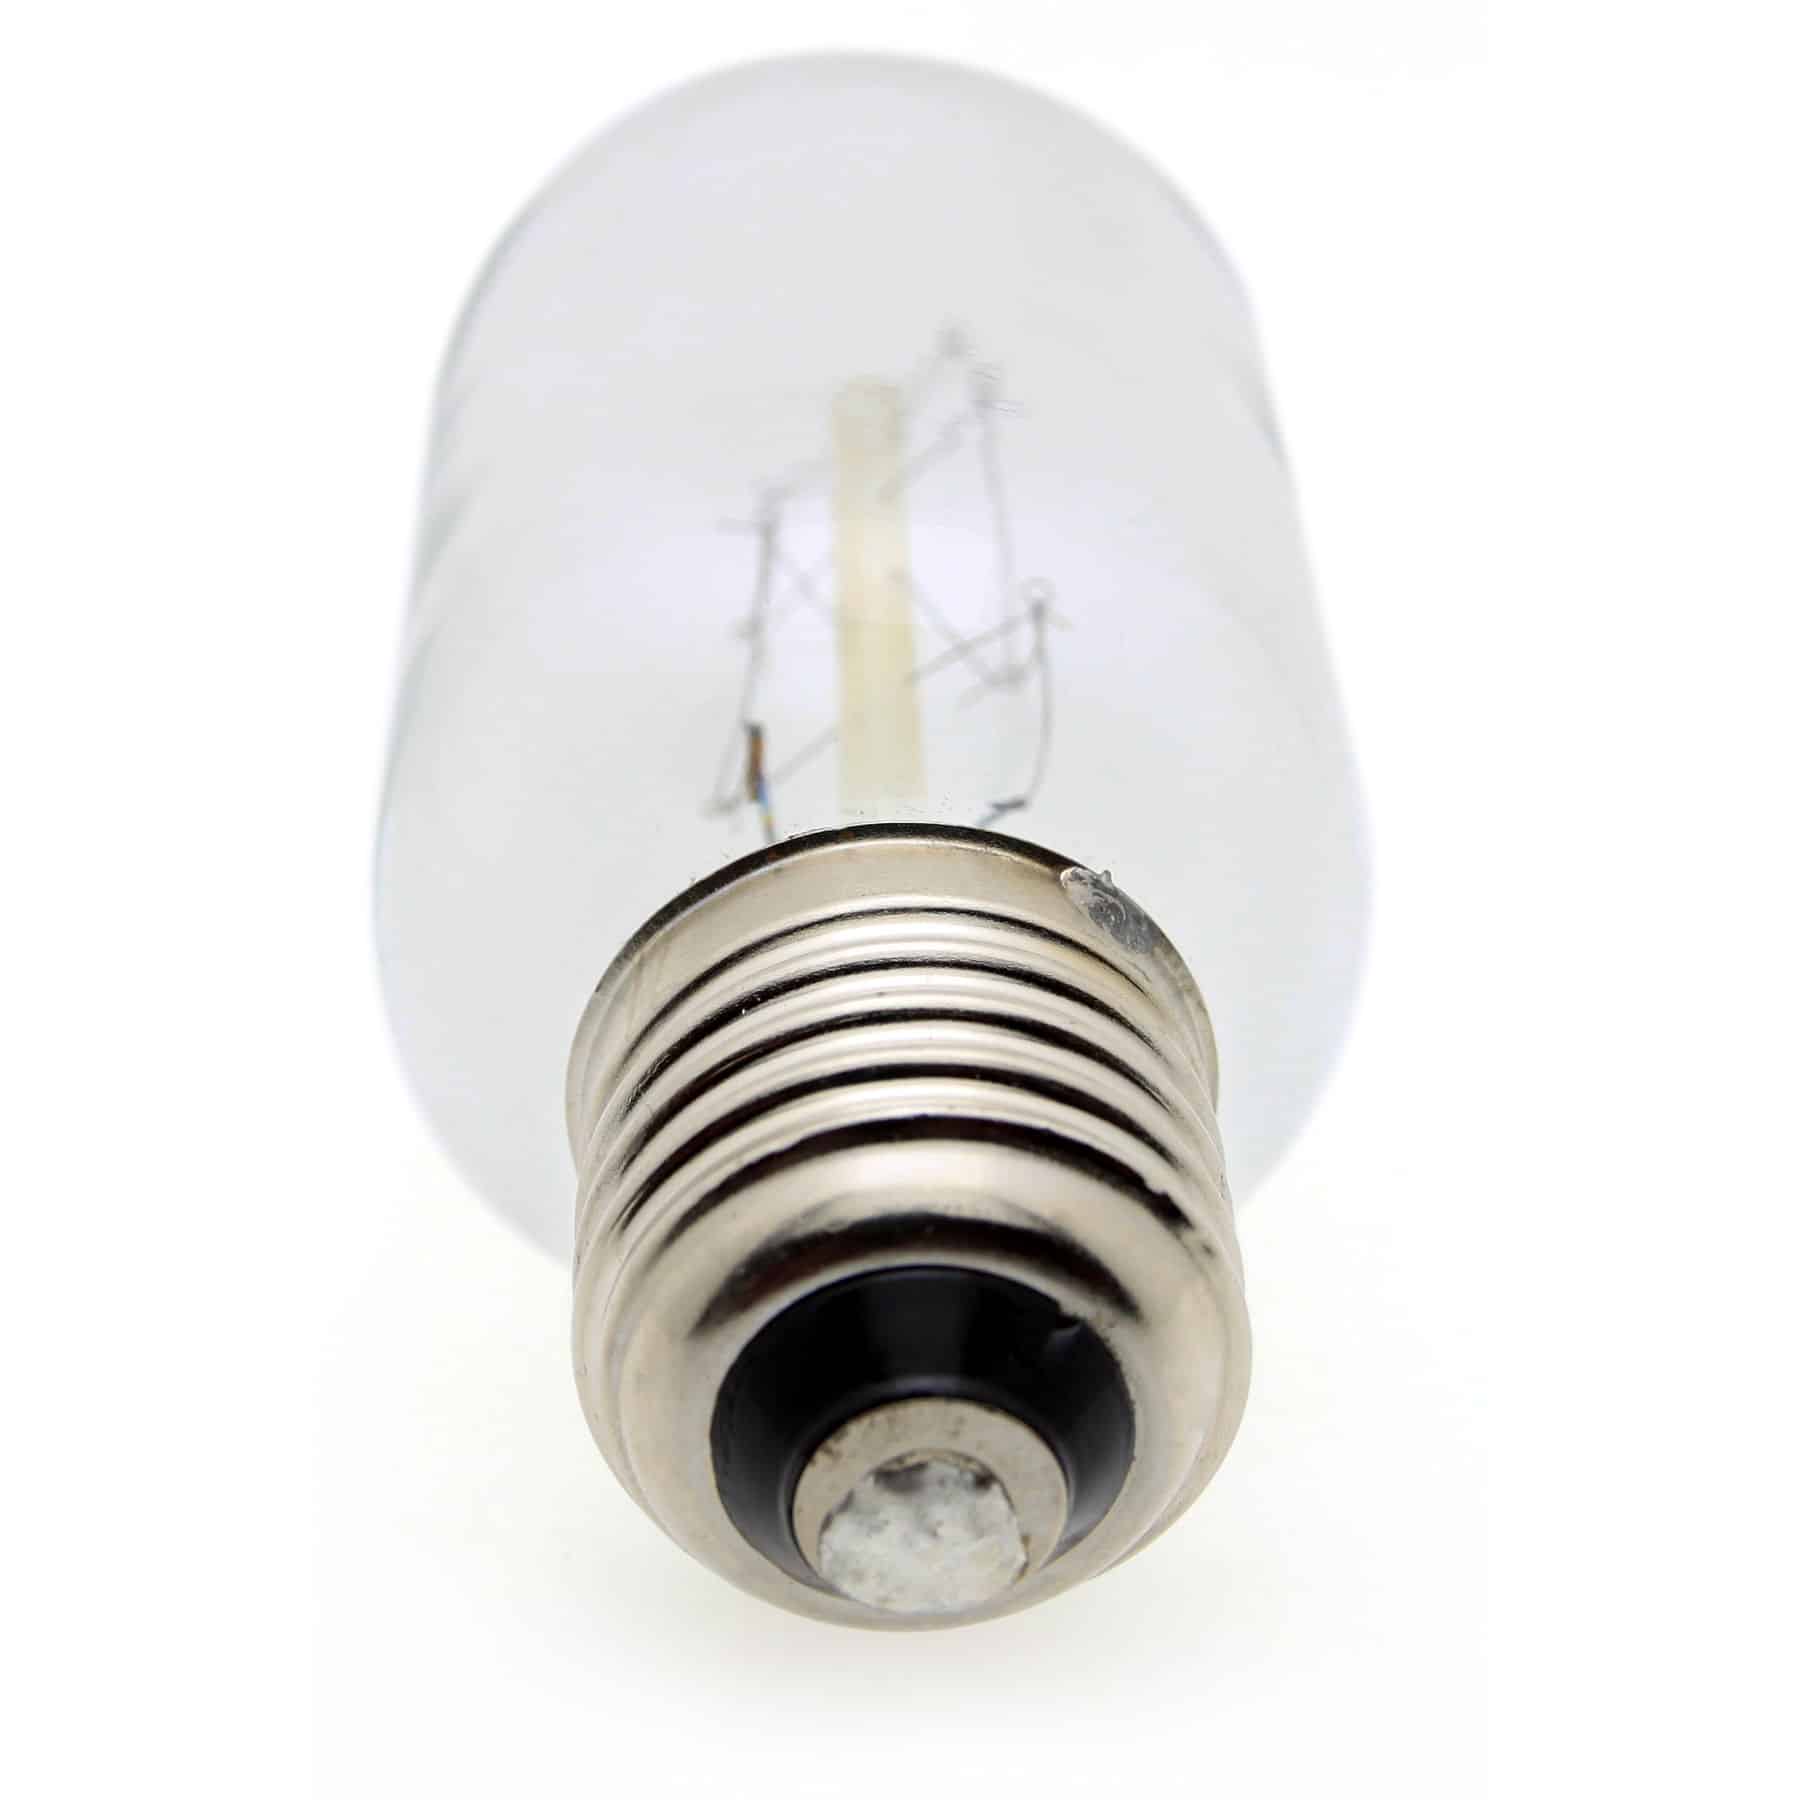 2 x Bell Natural Daylight 60 Watt GLS Bulb ES//E27 Edison Screw Fitting